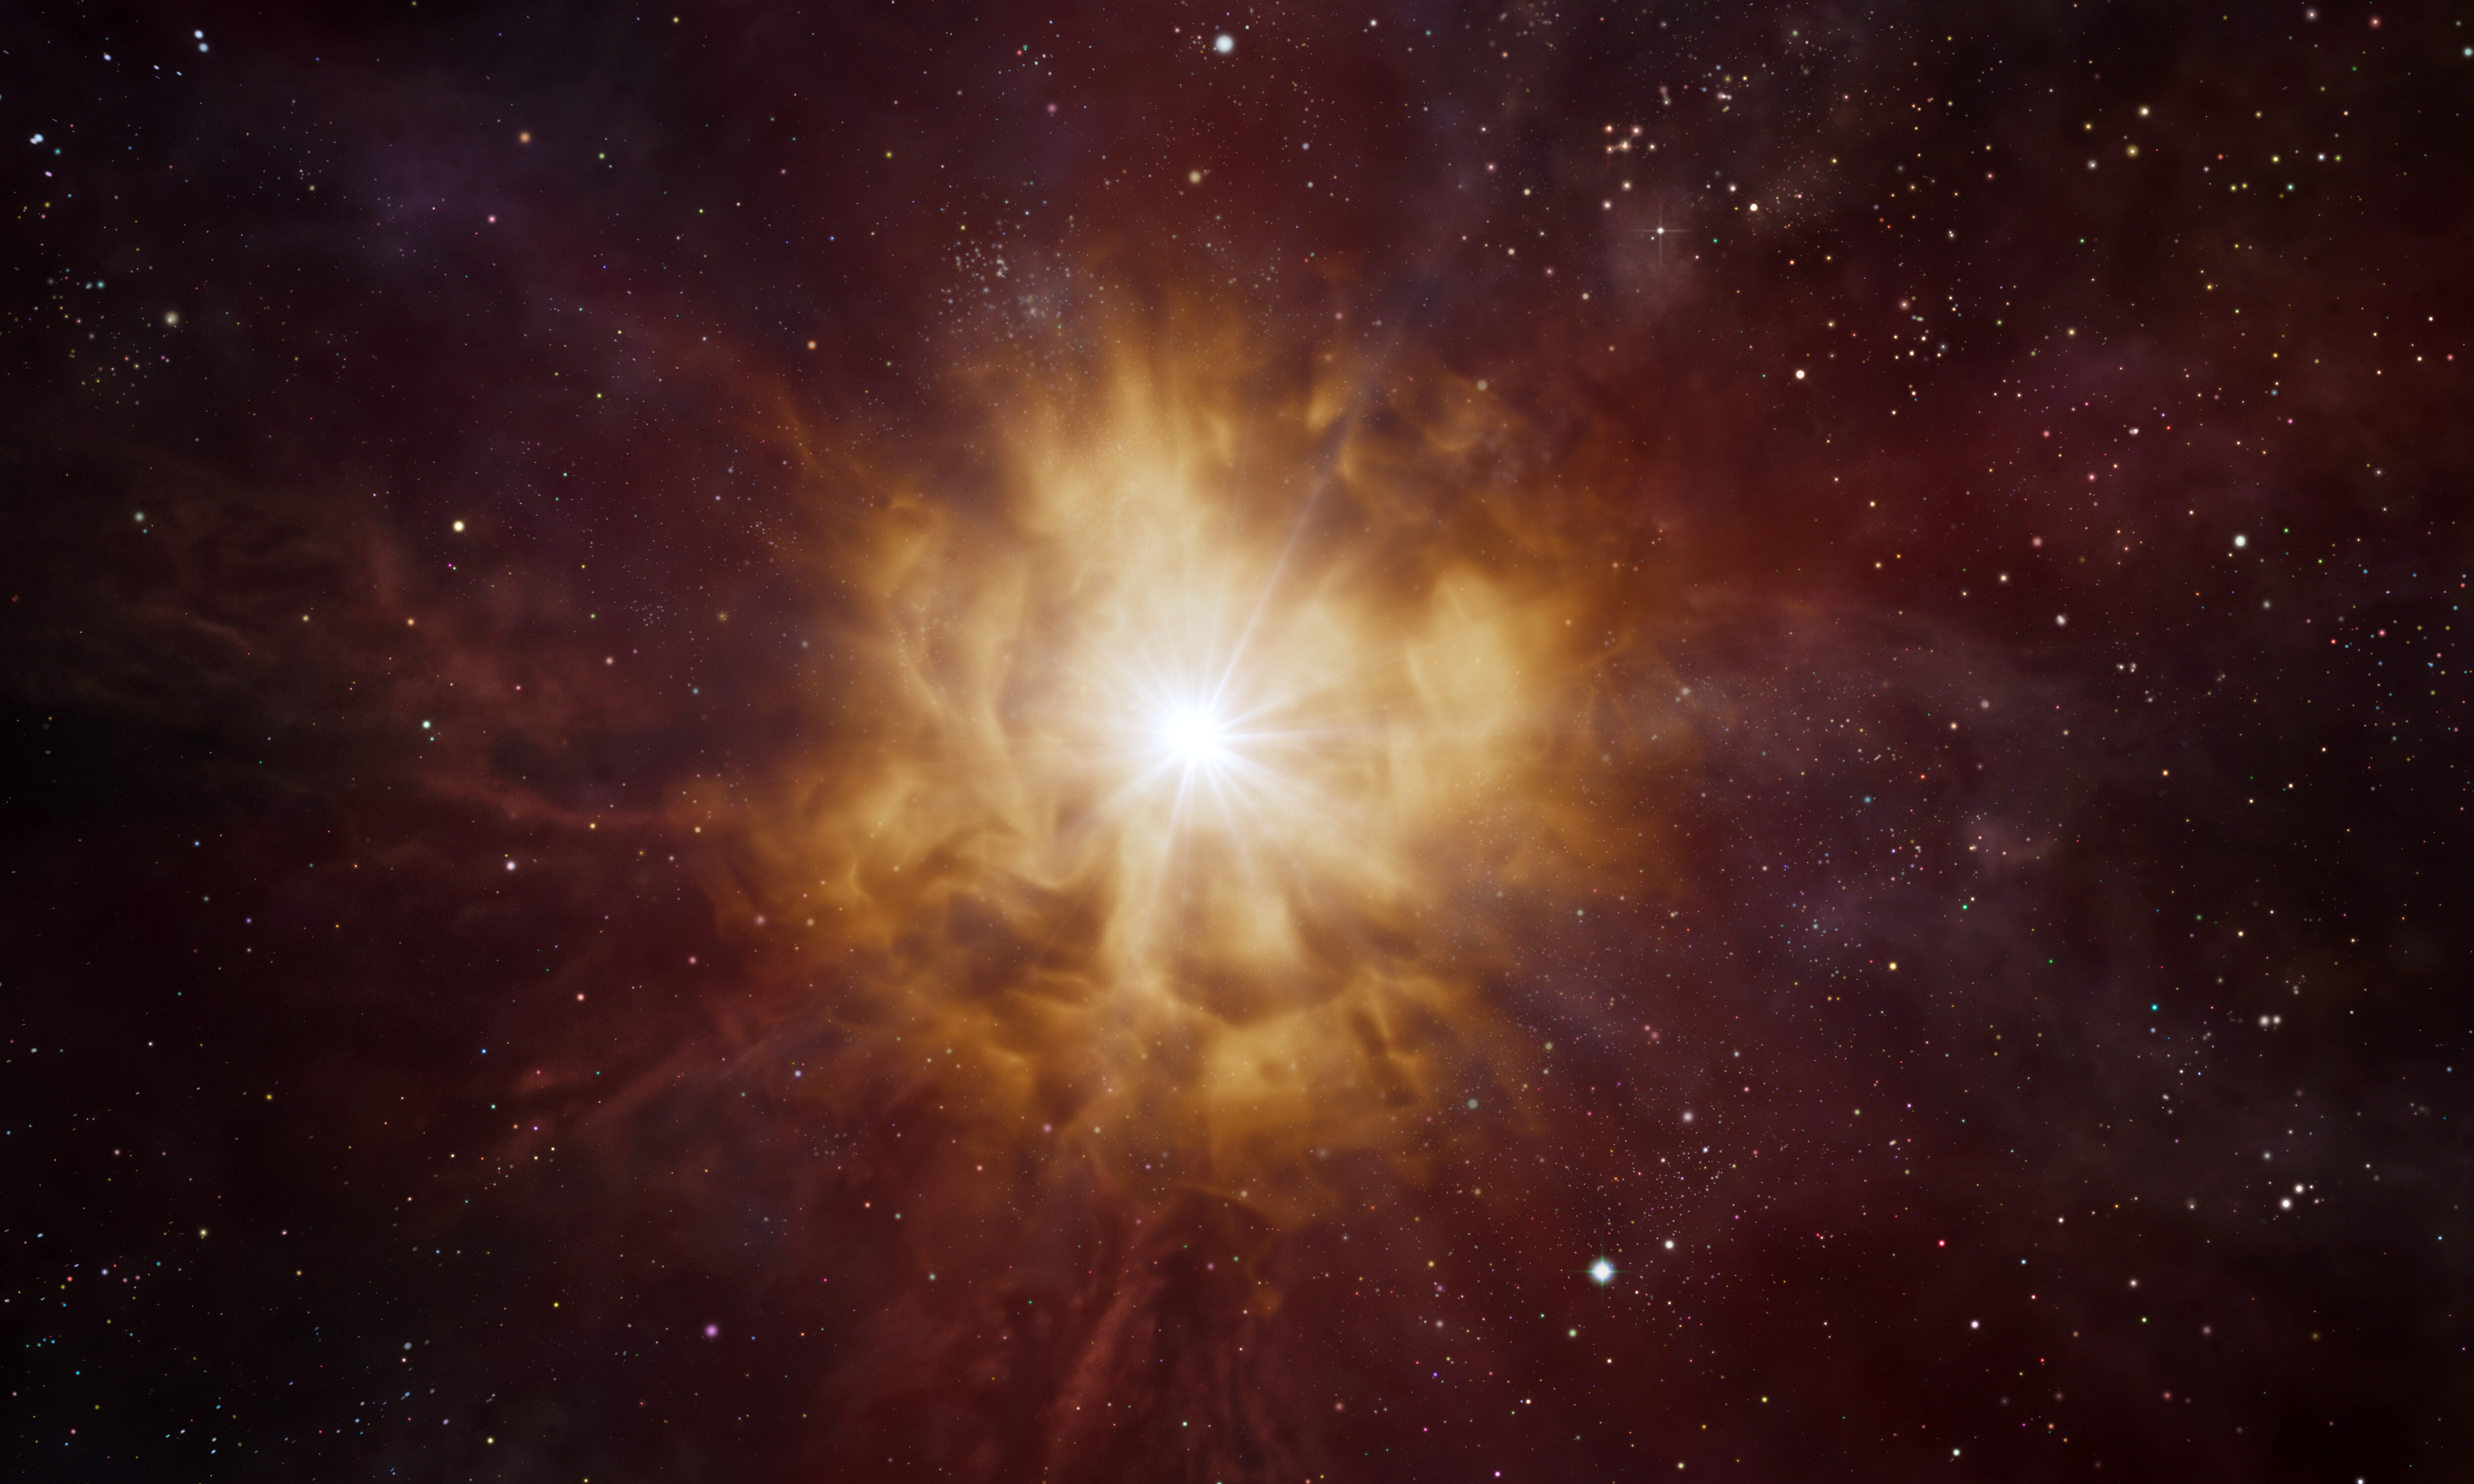 Esta impresión artística muestra el núcleo brillante de una estrella Wolf Rayet, rodeado por una nebulosa de material expulsado por la estrella misma. Las estrellas Wolf-Rayet son masivas y calientes, con un ciclo de vida de unos pocos millones de años. Se piensa que finalizan en dramáticas explosiones de supernovas, expulsando los elementos que se forjaron en sus núcleos hacia el cosmos. Crédito: ESO/L. Calçada